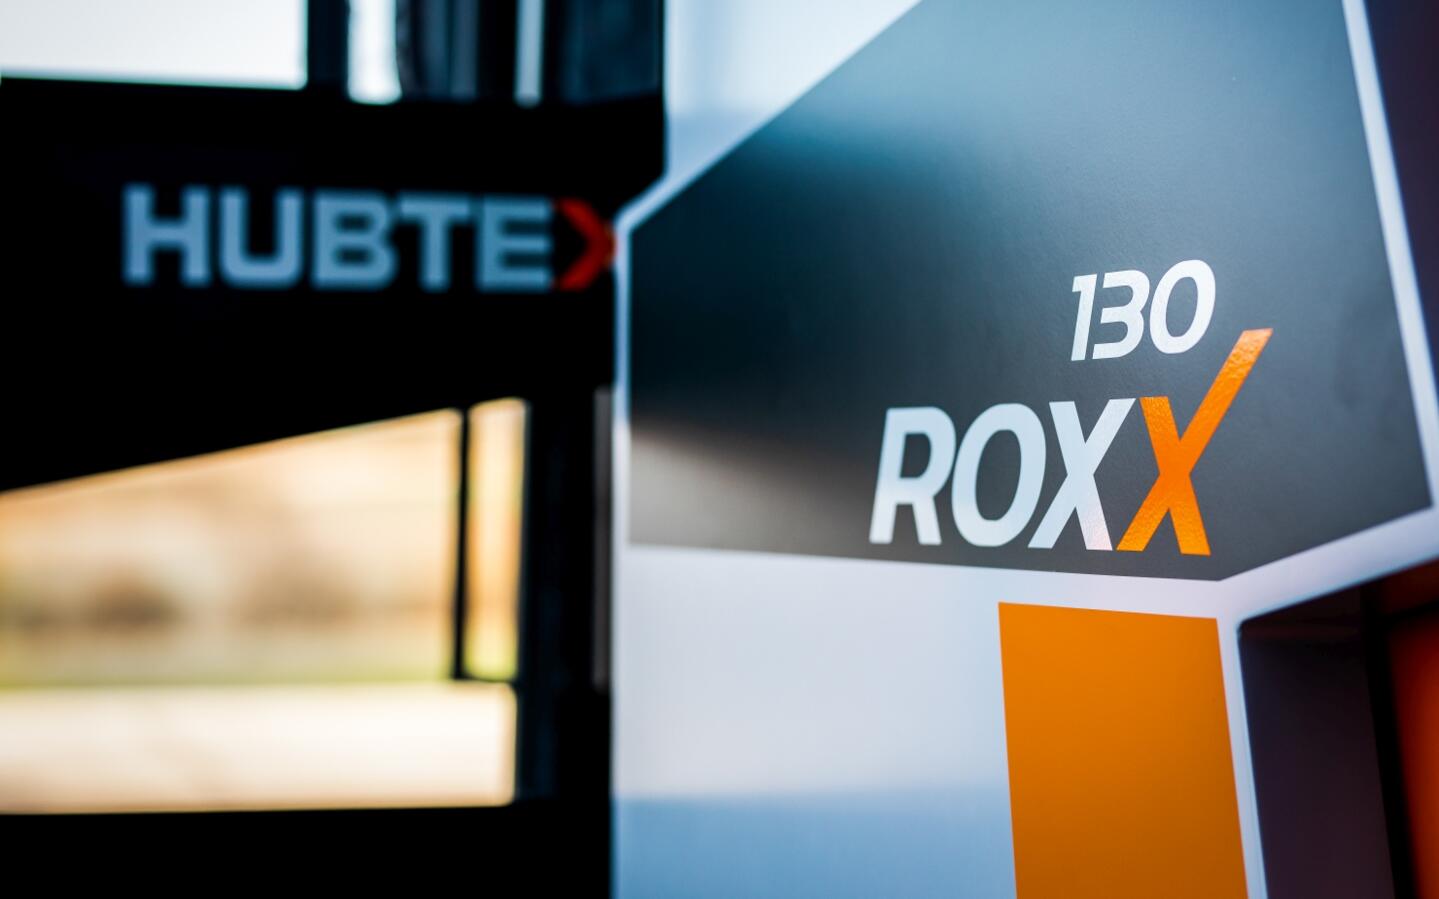 Le RoxX transporte des charges lourdes dans des espaces confinés.